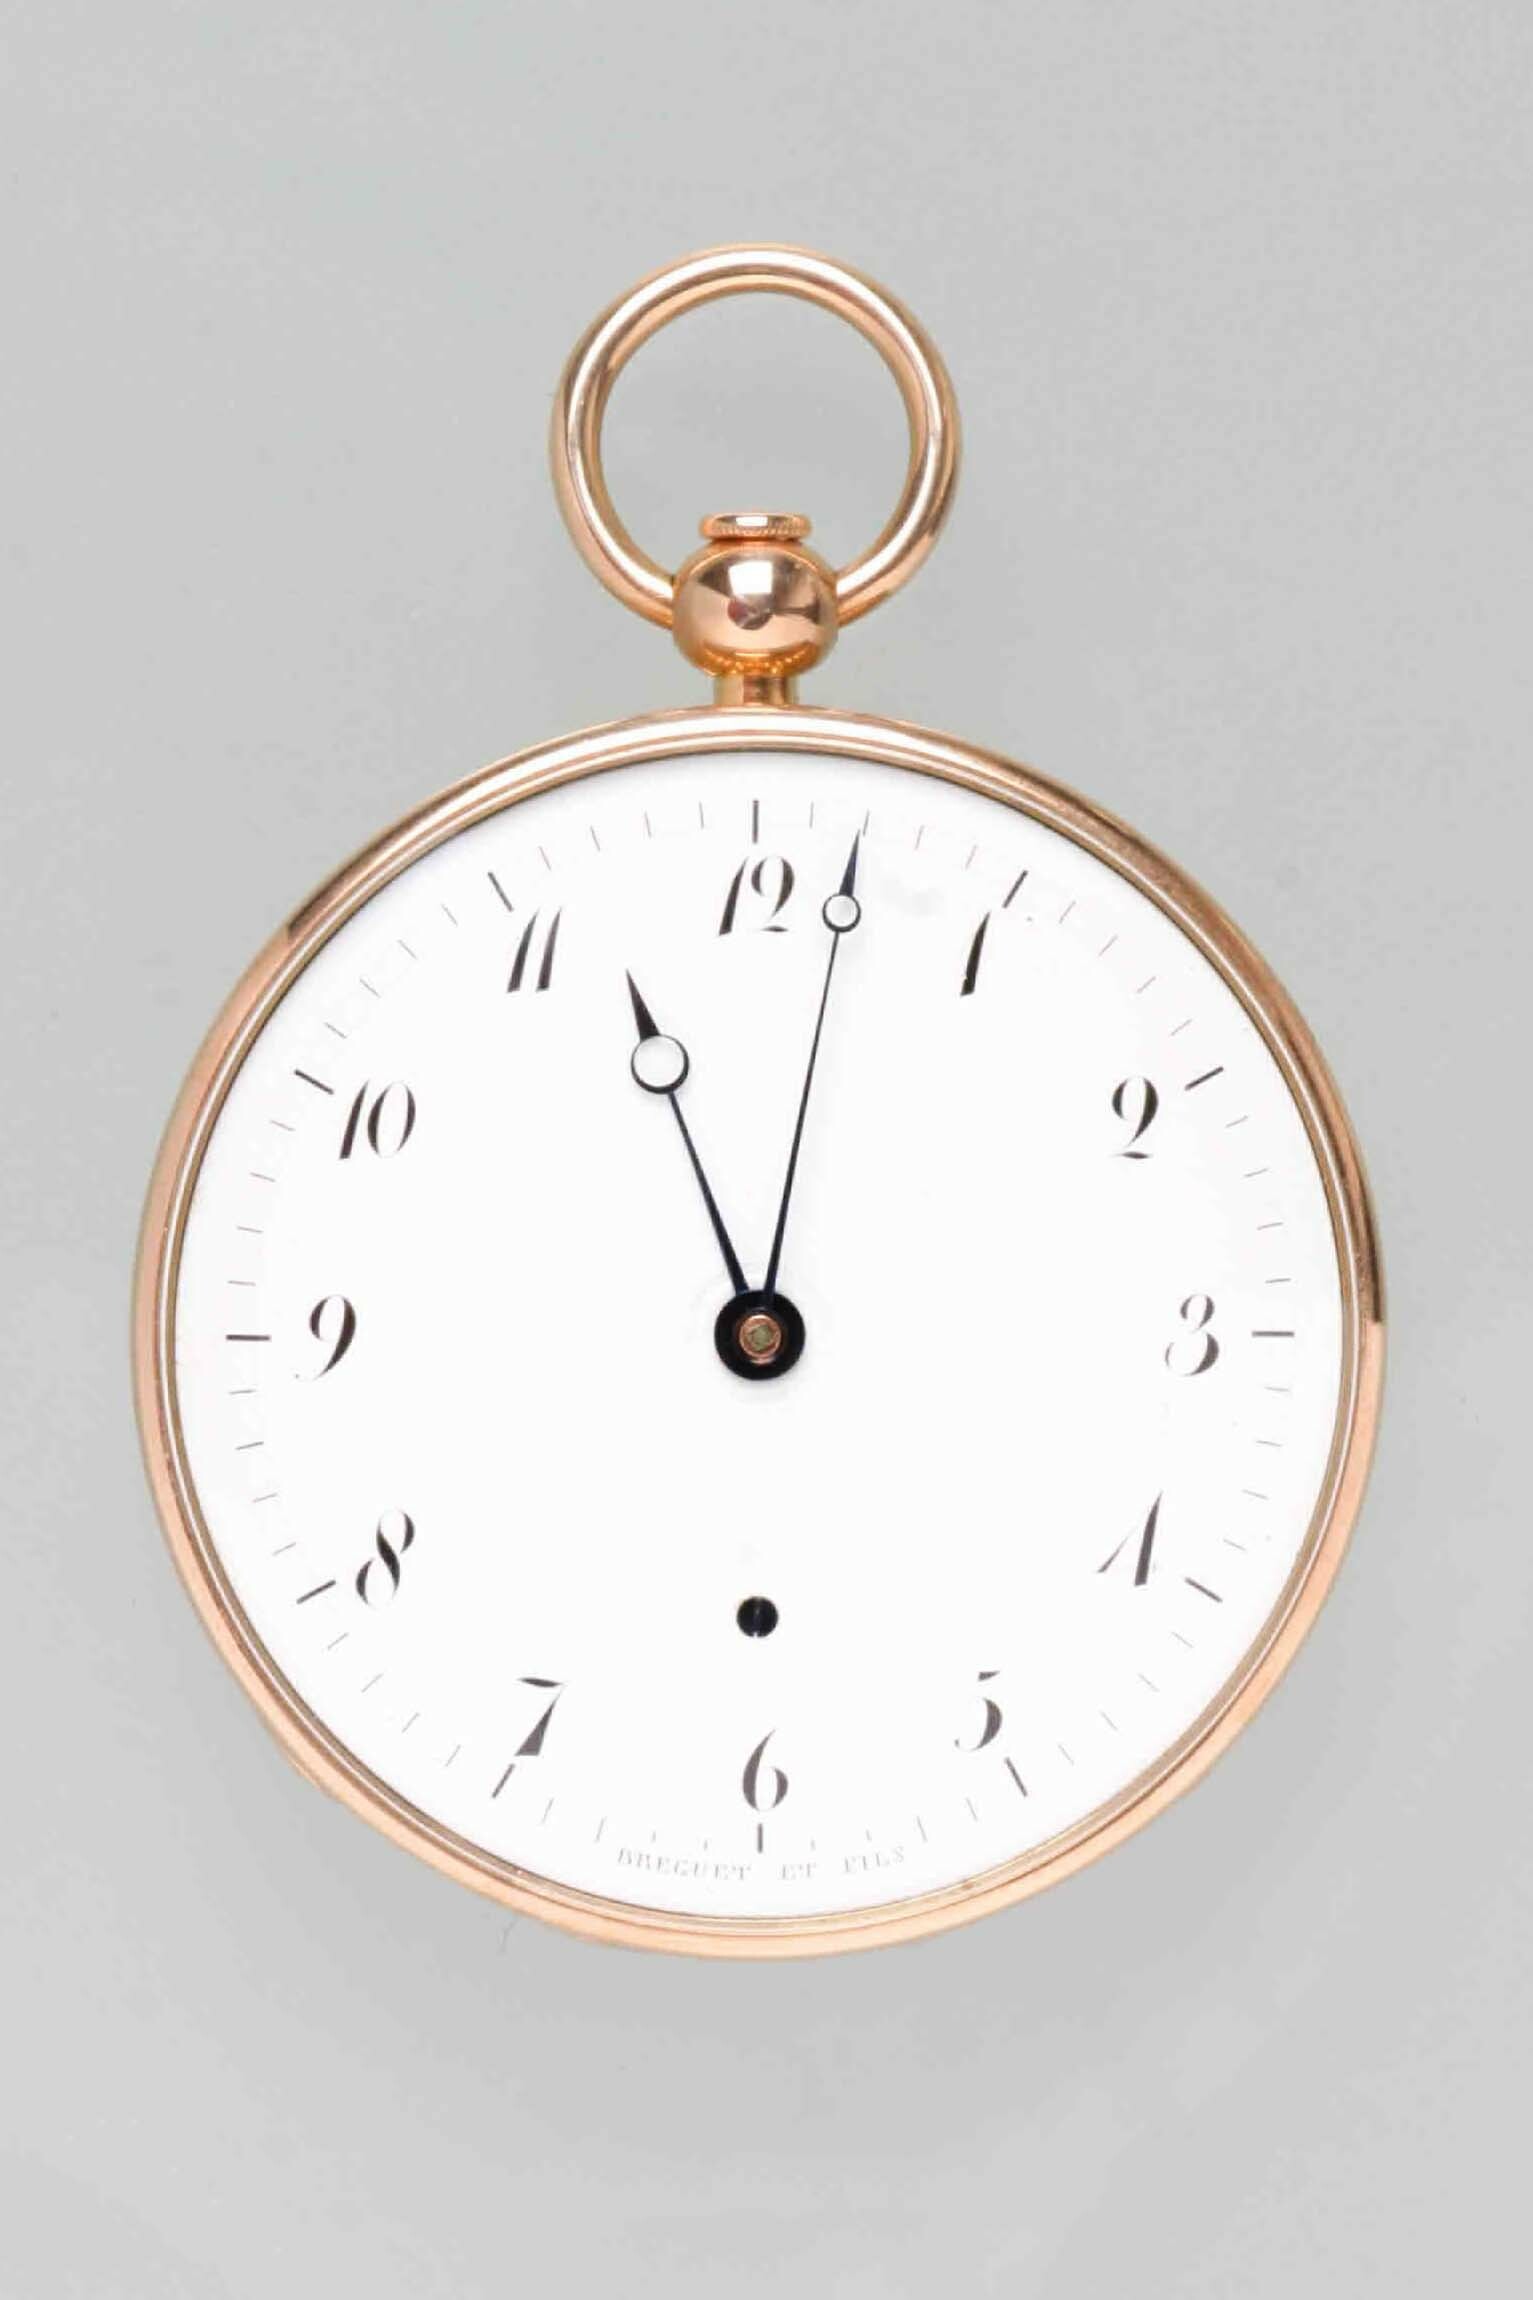 Taschenuhr, Breguet et Fils, Paris, um 1815 (Deutsches Uhrenmuseum CC BY-SA)